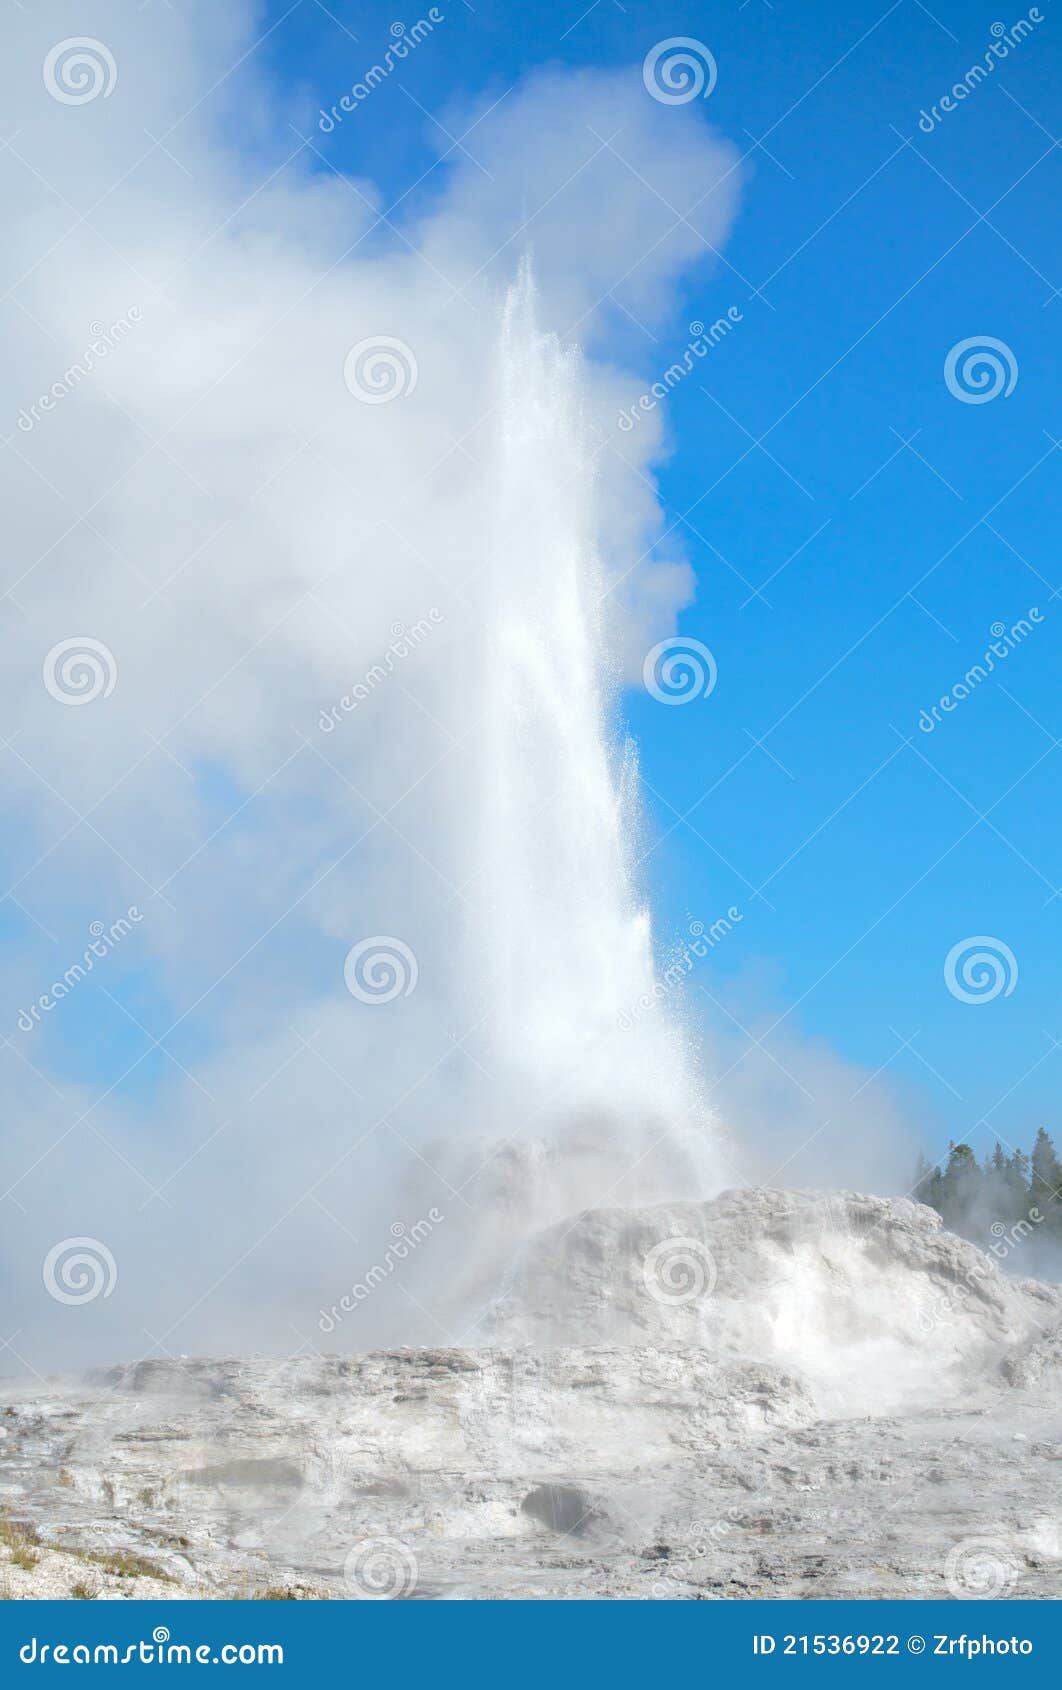 castle geyser erupting